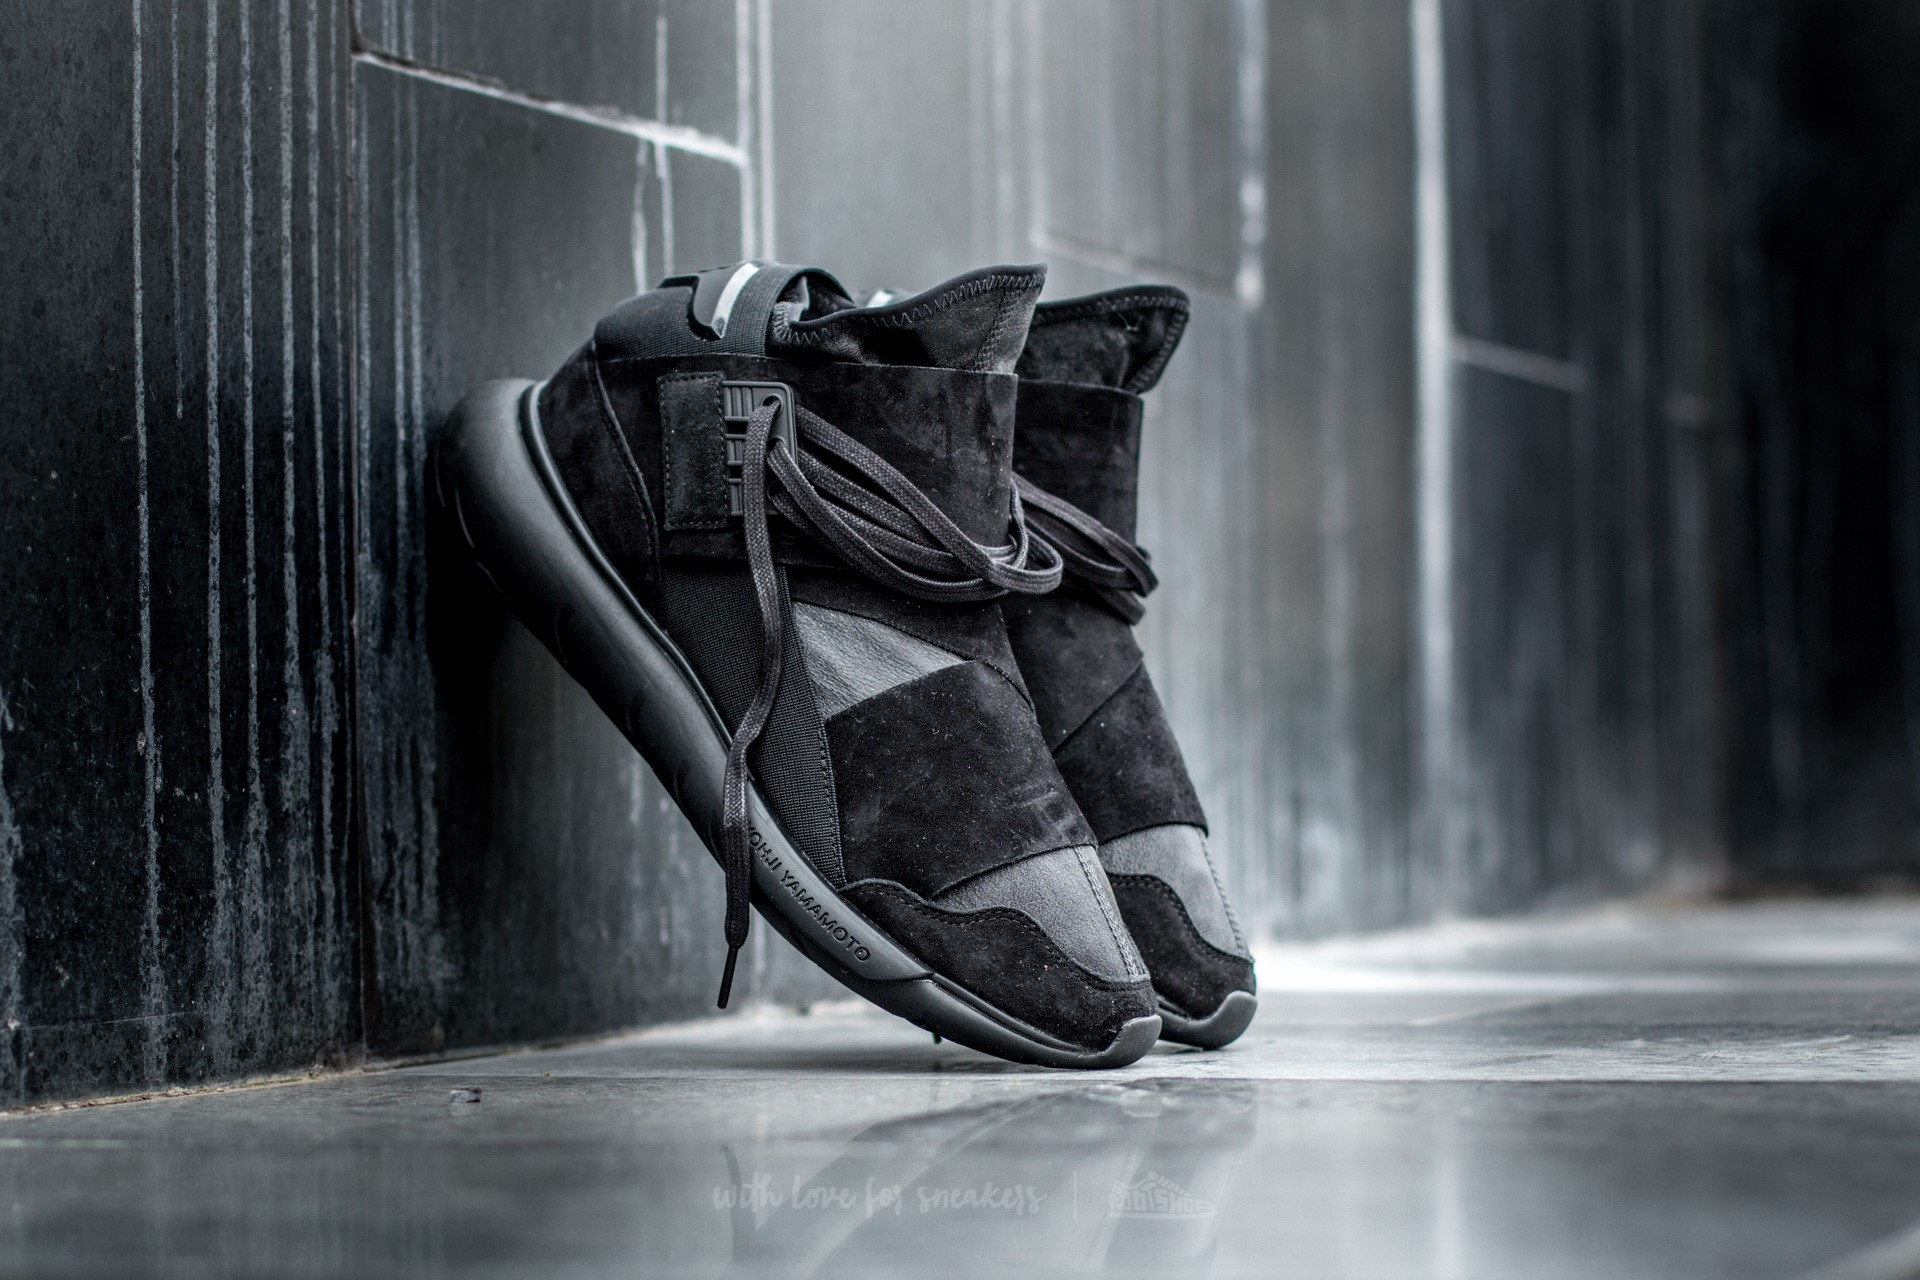 Men's shoes Y-3 Qasa High Carbon Black/ Carbon Black/ Carbon Black